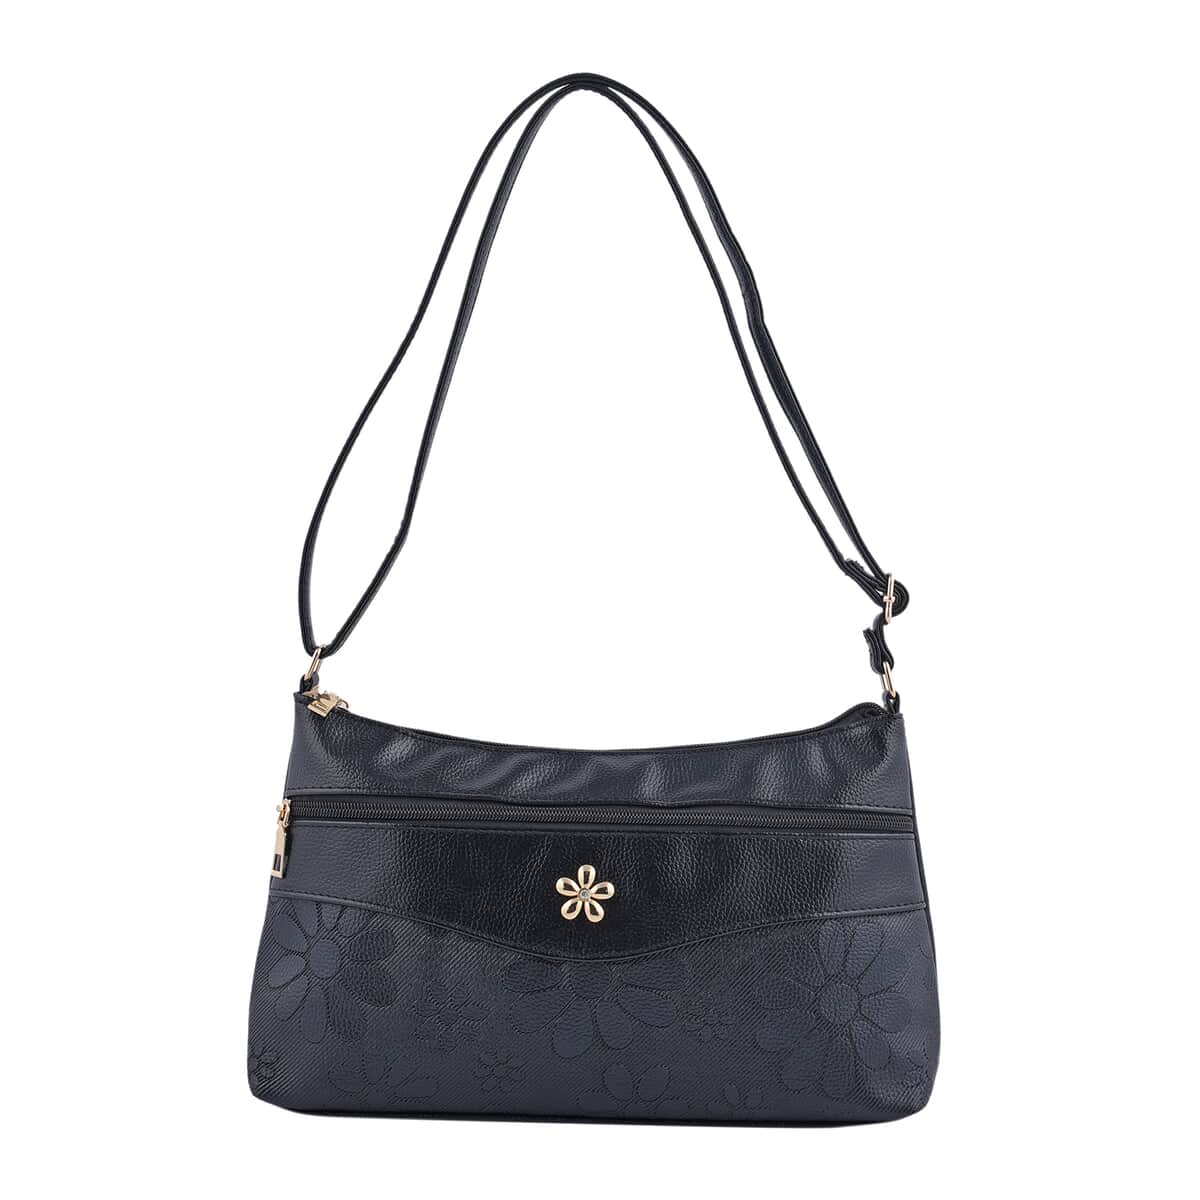 Black Faux Leather Crossbody Bag with Metal Flower and Adjustable Shoulder Strap image number 0